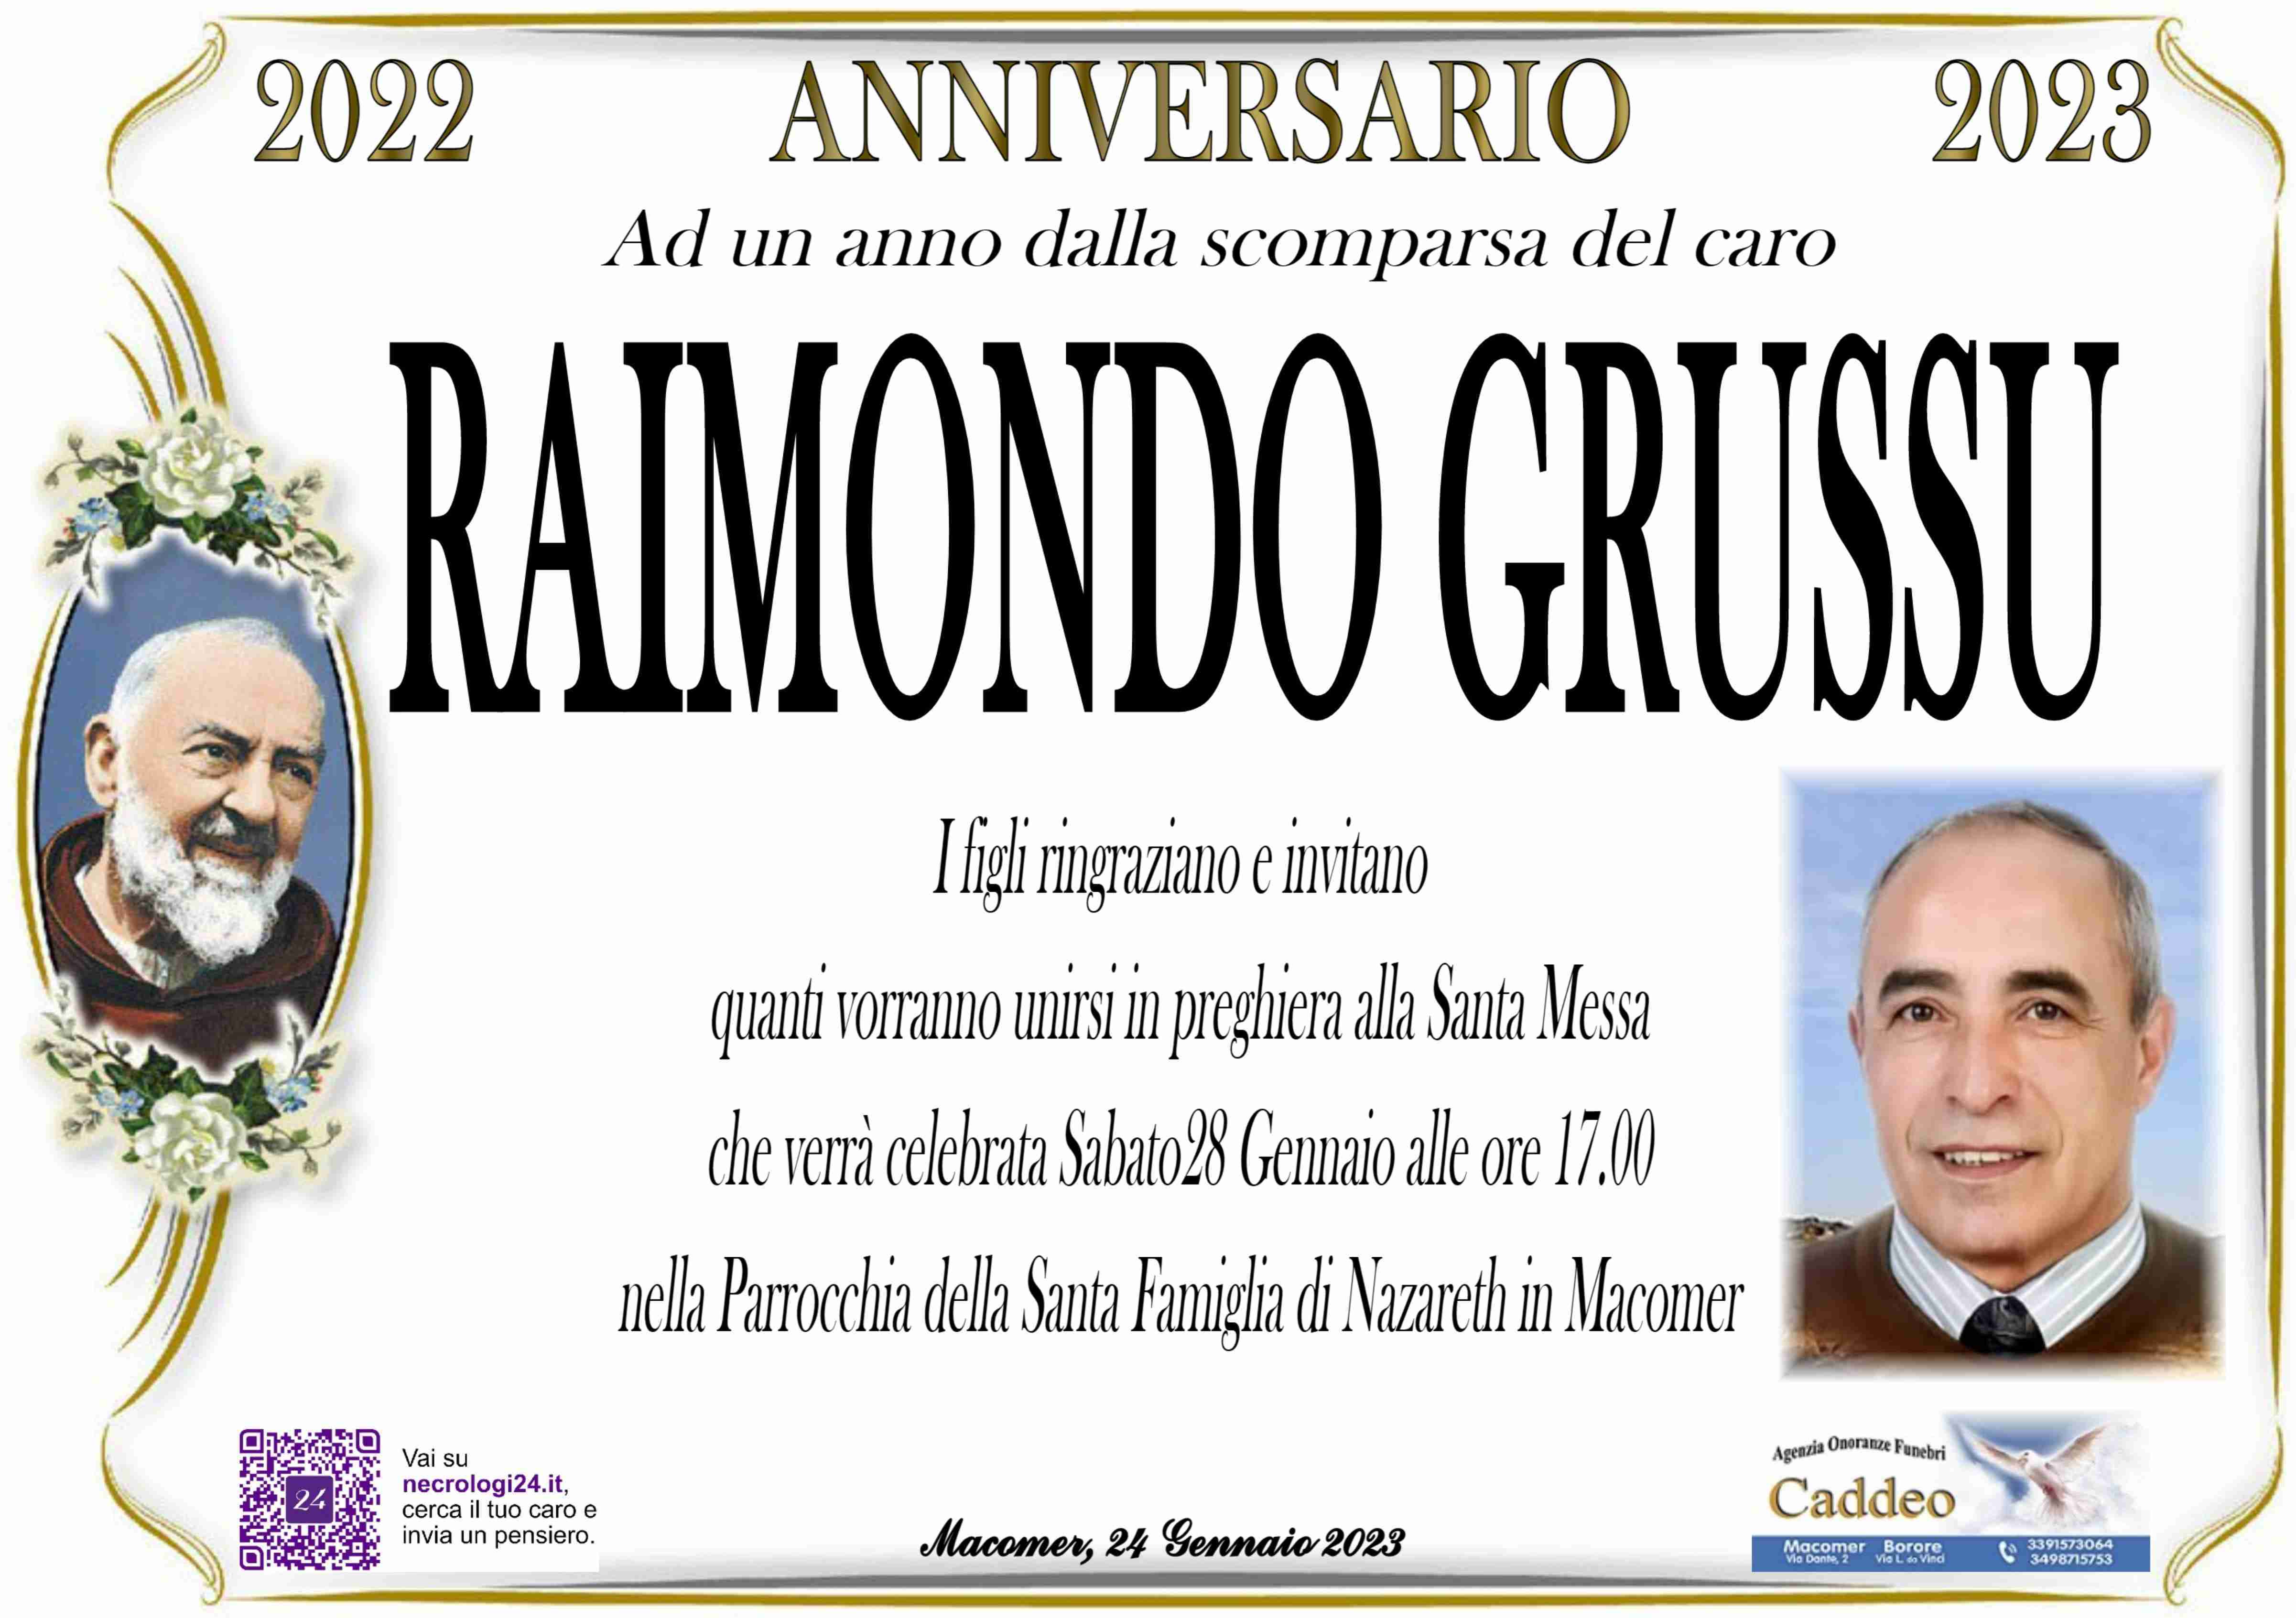 Raimondo Grussu